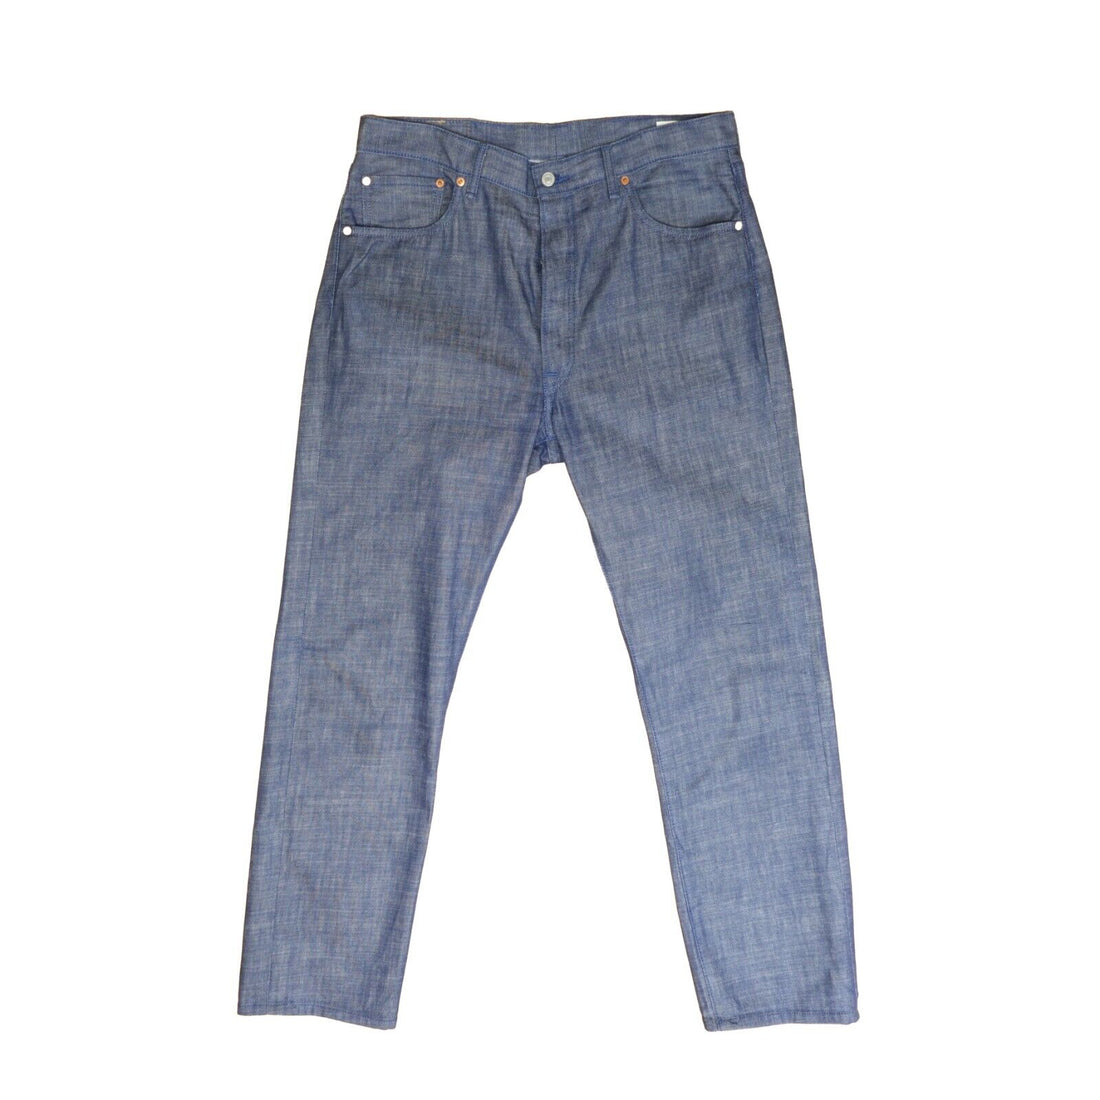 Levi Strauss & Co 501 White Oak Cone Denim Jeans Pants Size W36 X L34 00501-2225